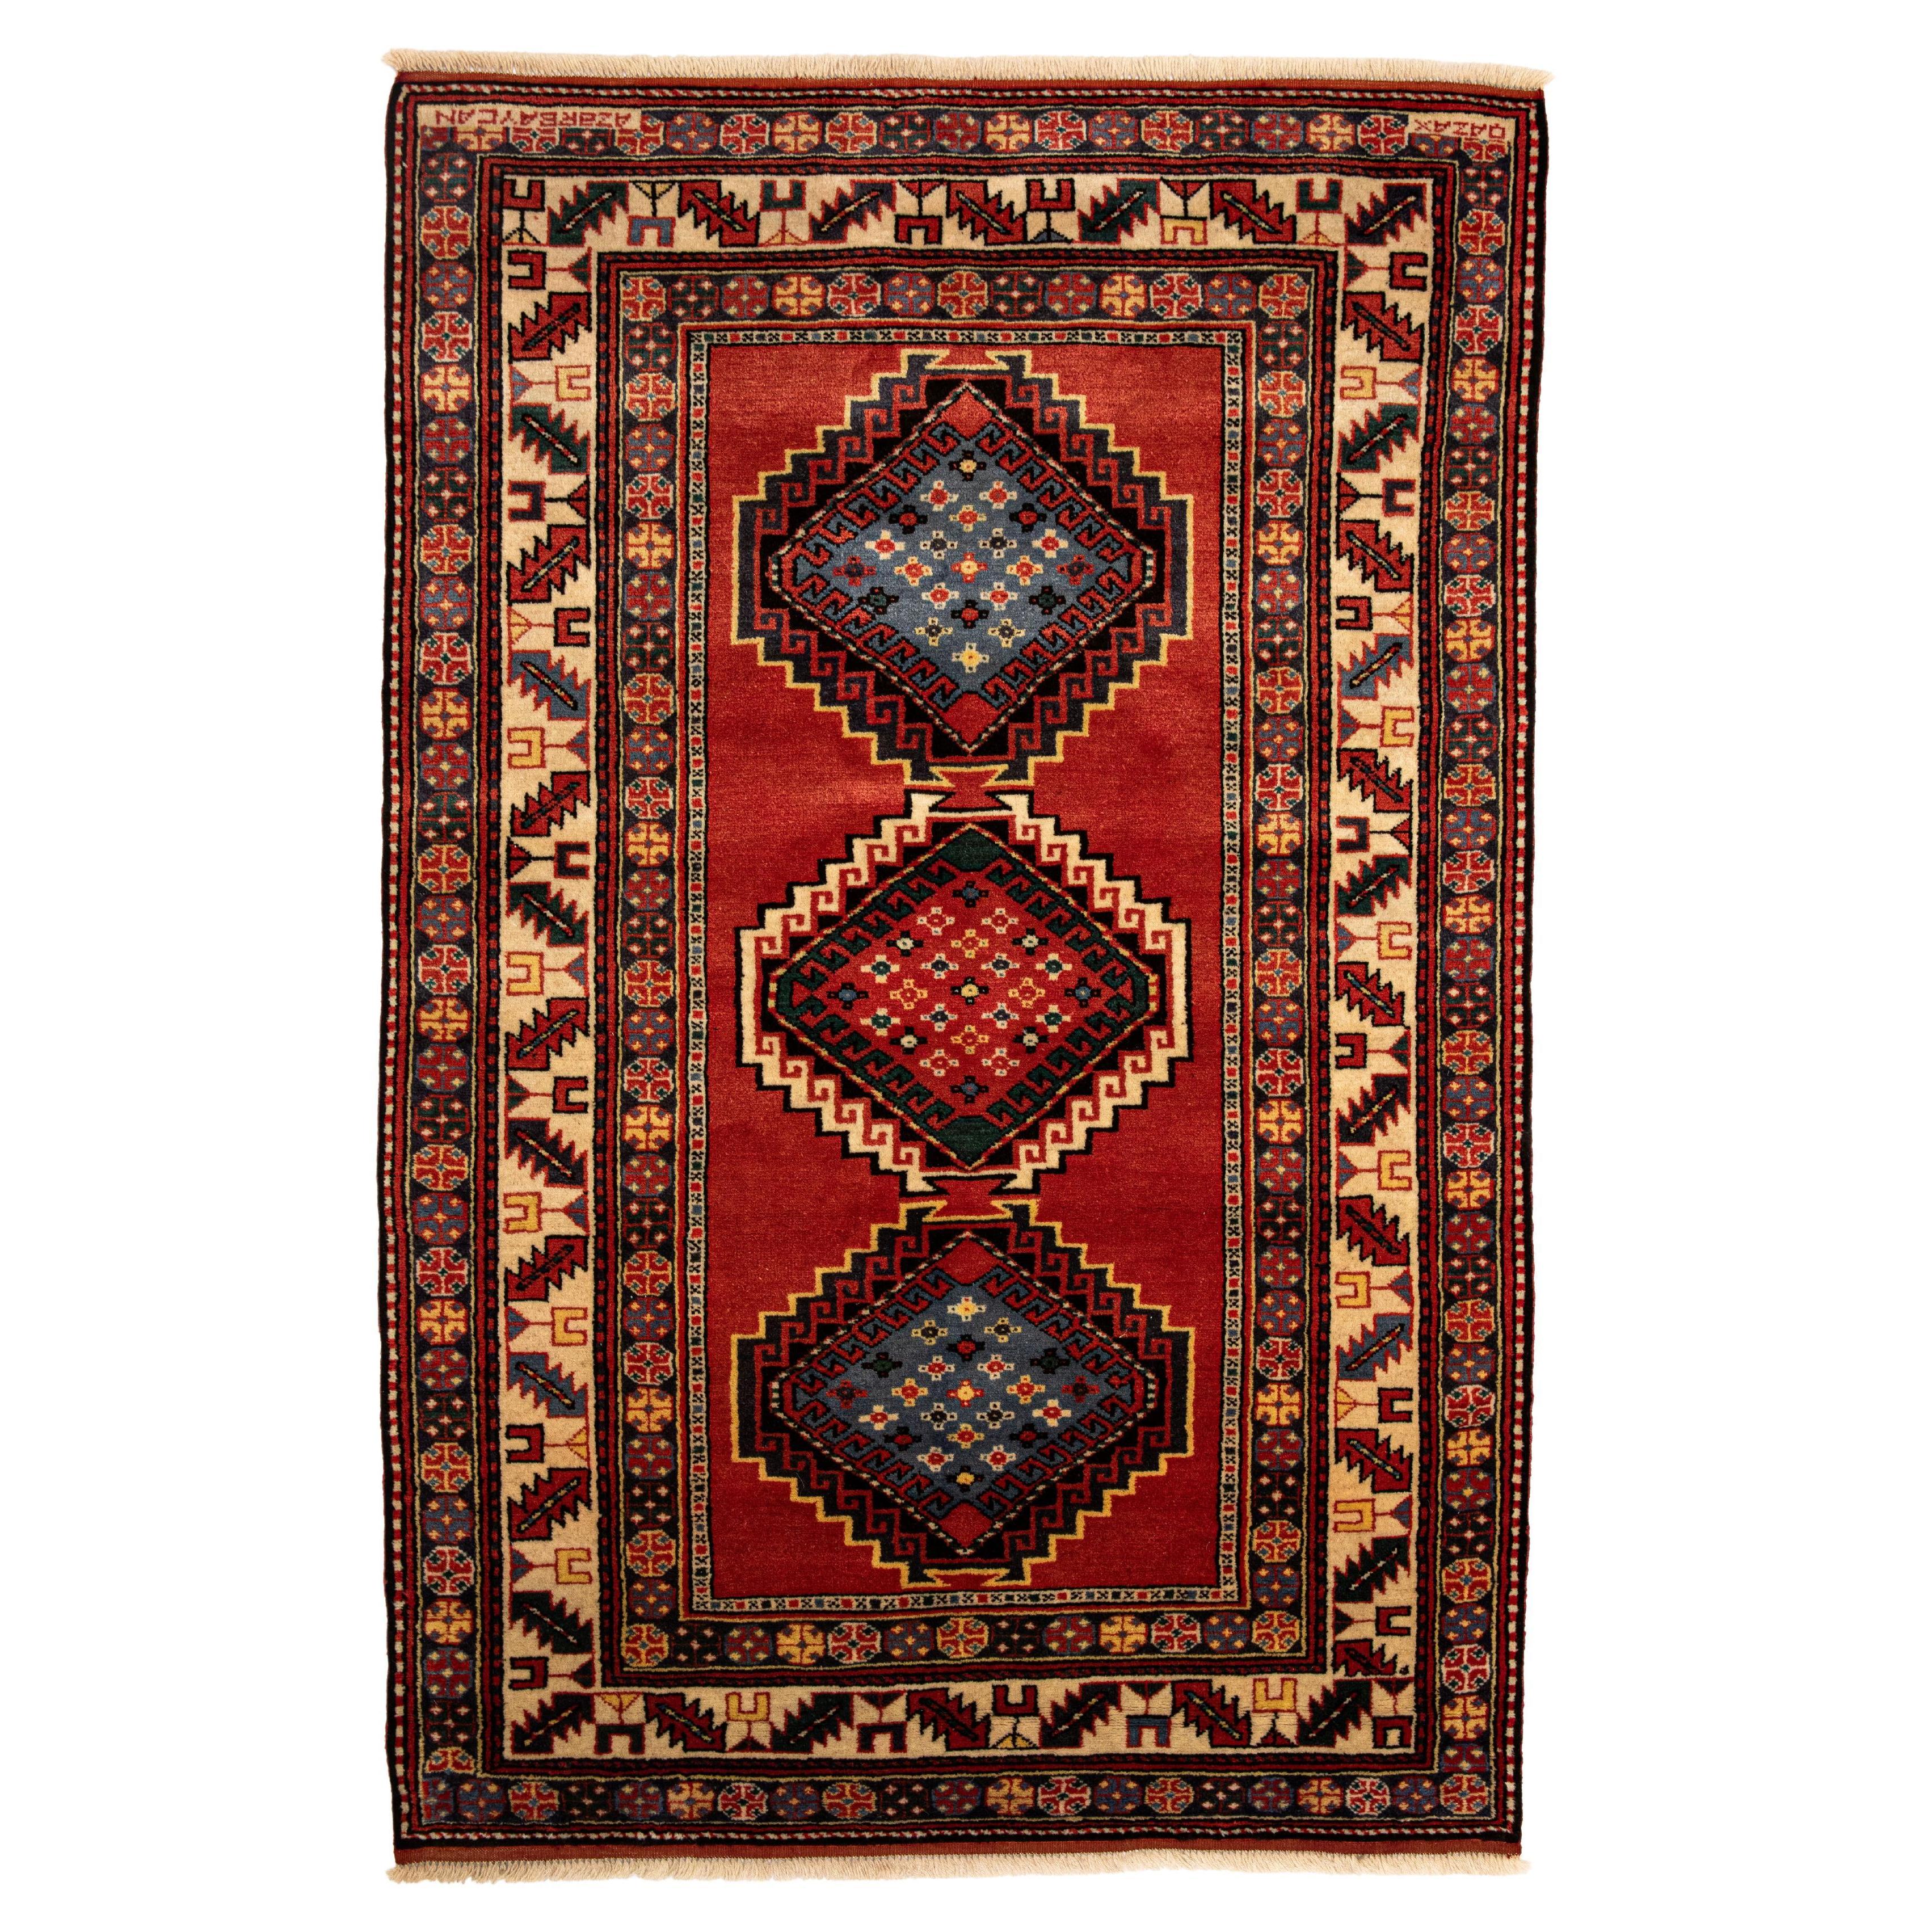 Shirvan Museum kuratierter, neuer handgefertigter kaukasischer Teppich